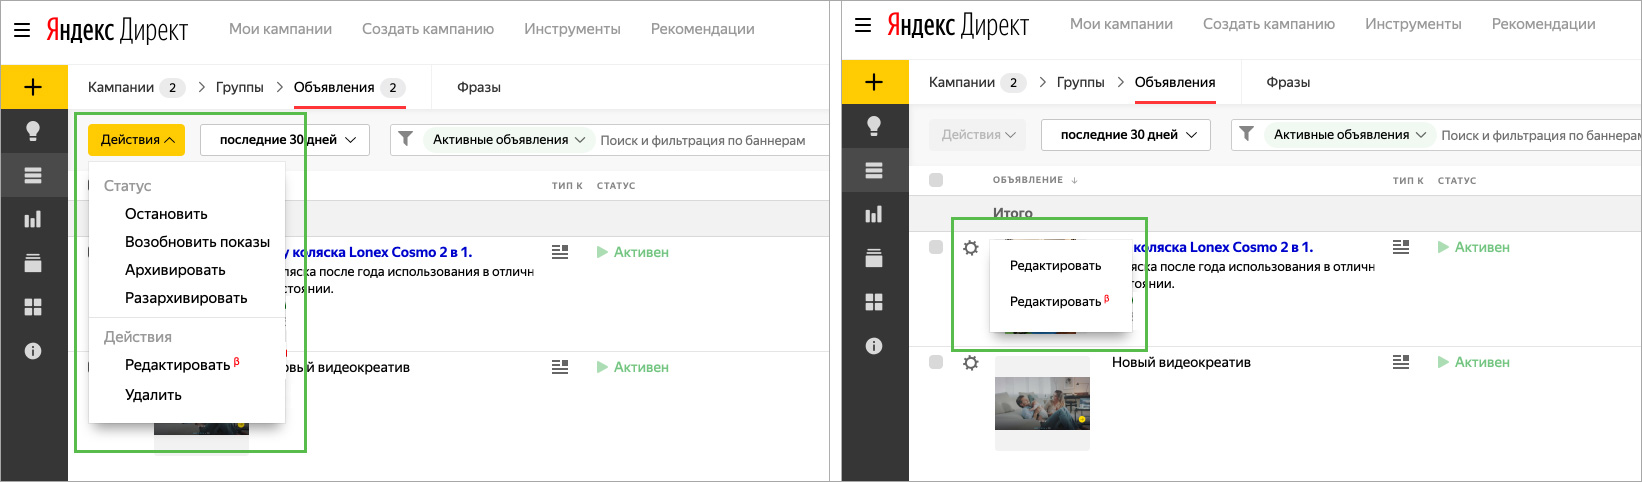 Яндекс директ tor browser мега очистить кэш в тор браузере megaruzxpnew4af